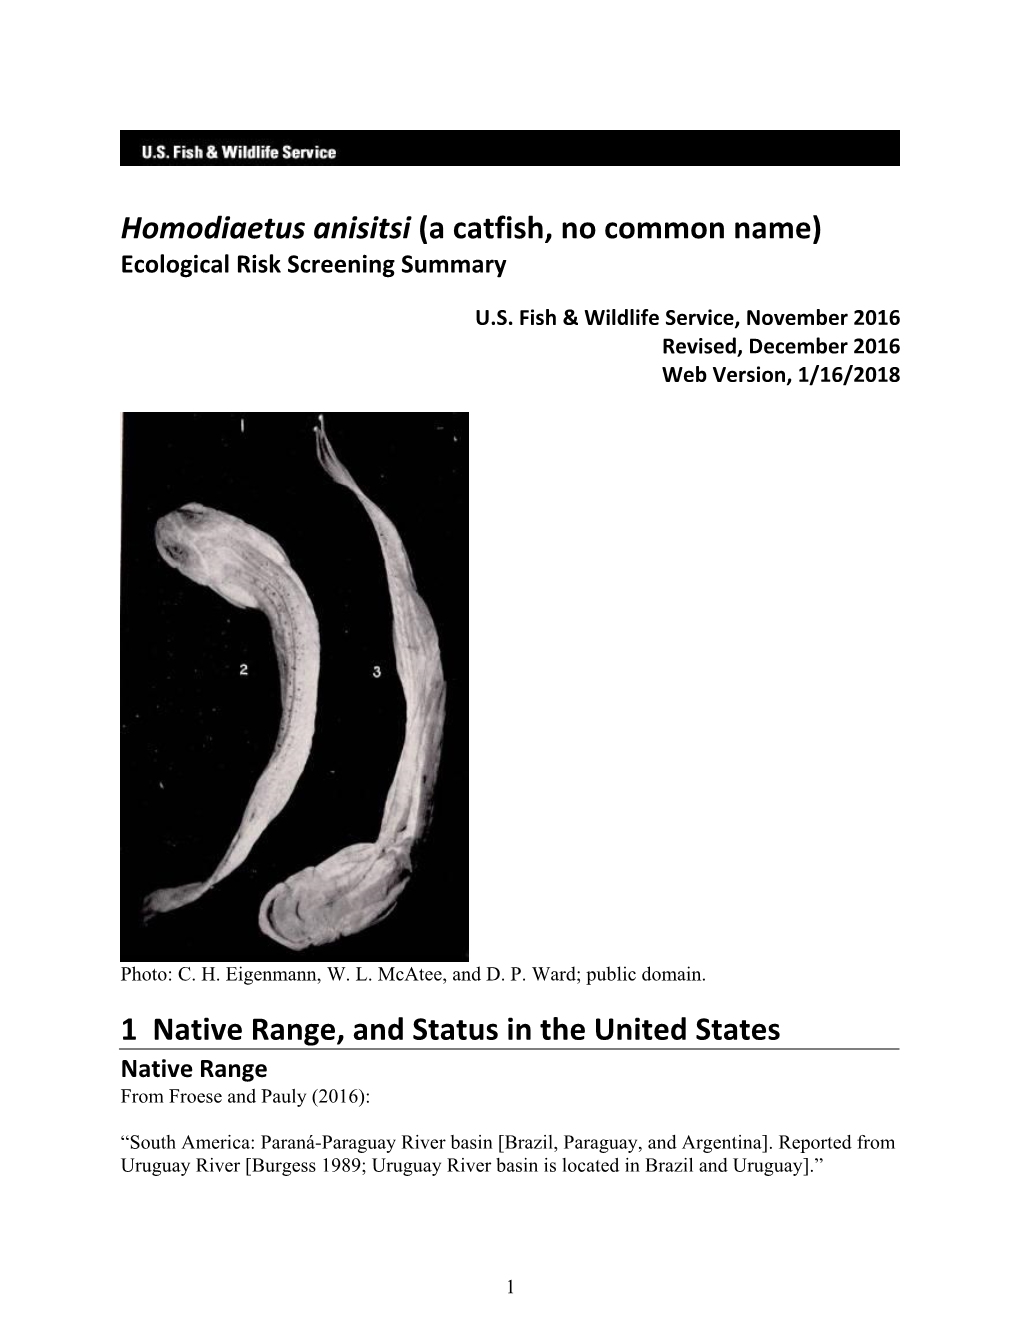 Homodiaetus Anisitsi (A Catfish, No Common Name) Ecological Risk Screening Summary